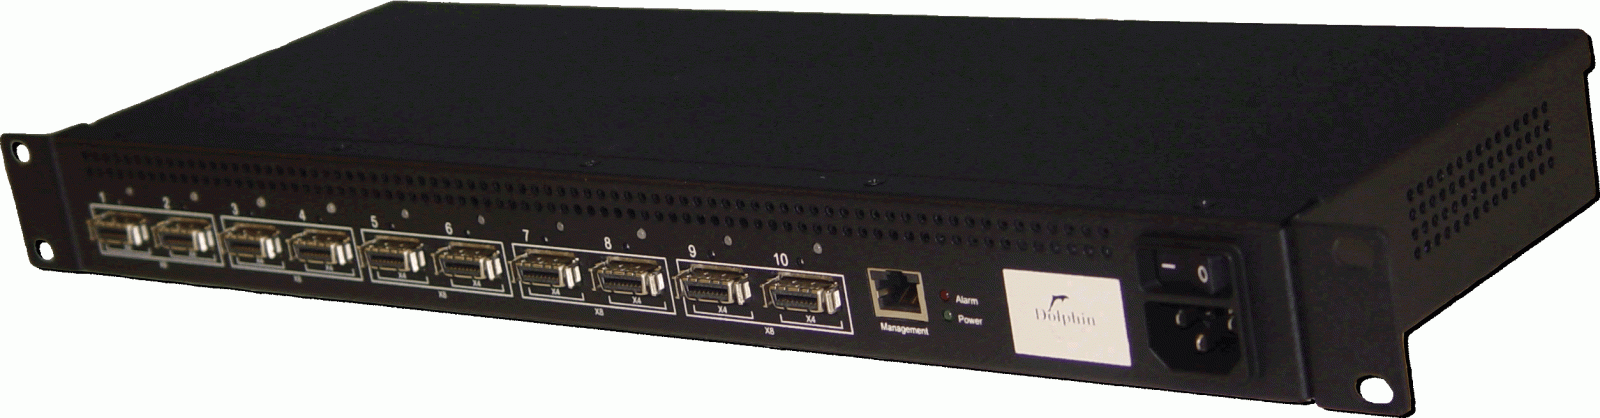 DXS410 PCIe Gen1 Switch